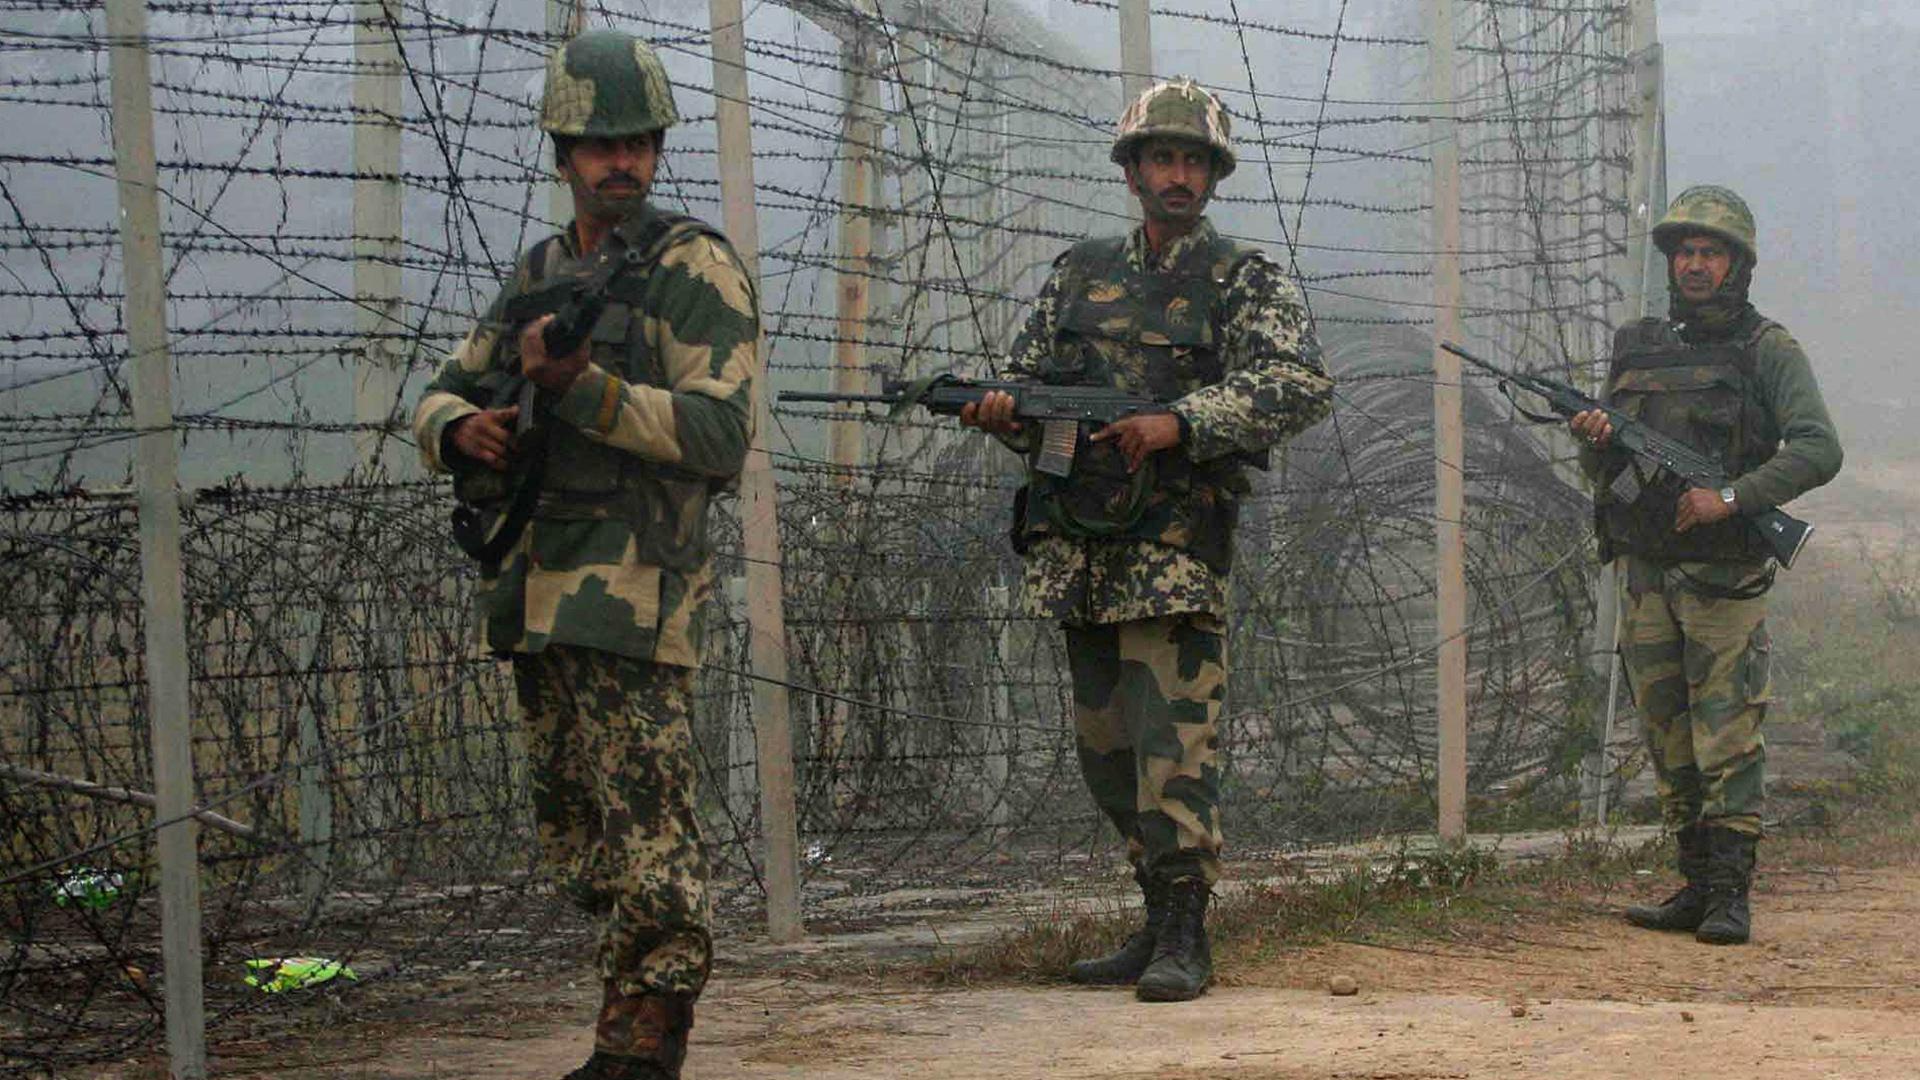 Конфликт Индии и Китая грозит перейти в большую войну: военные рассказали о потерях в регионе Ладакх в Гималаях 